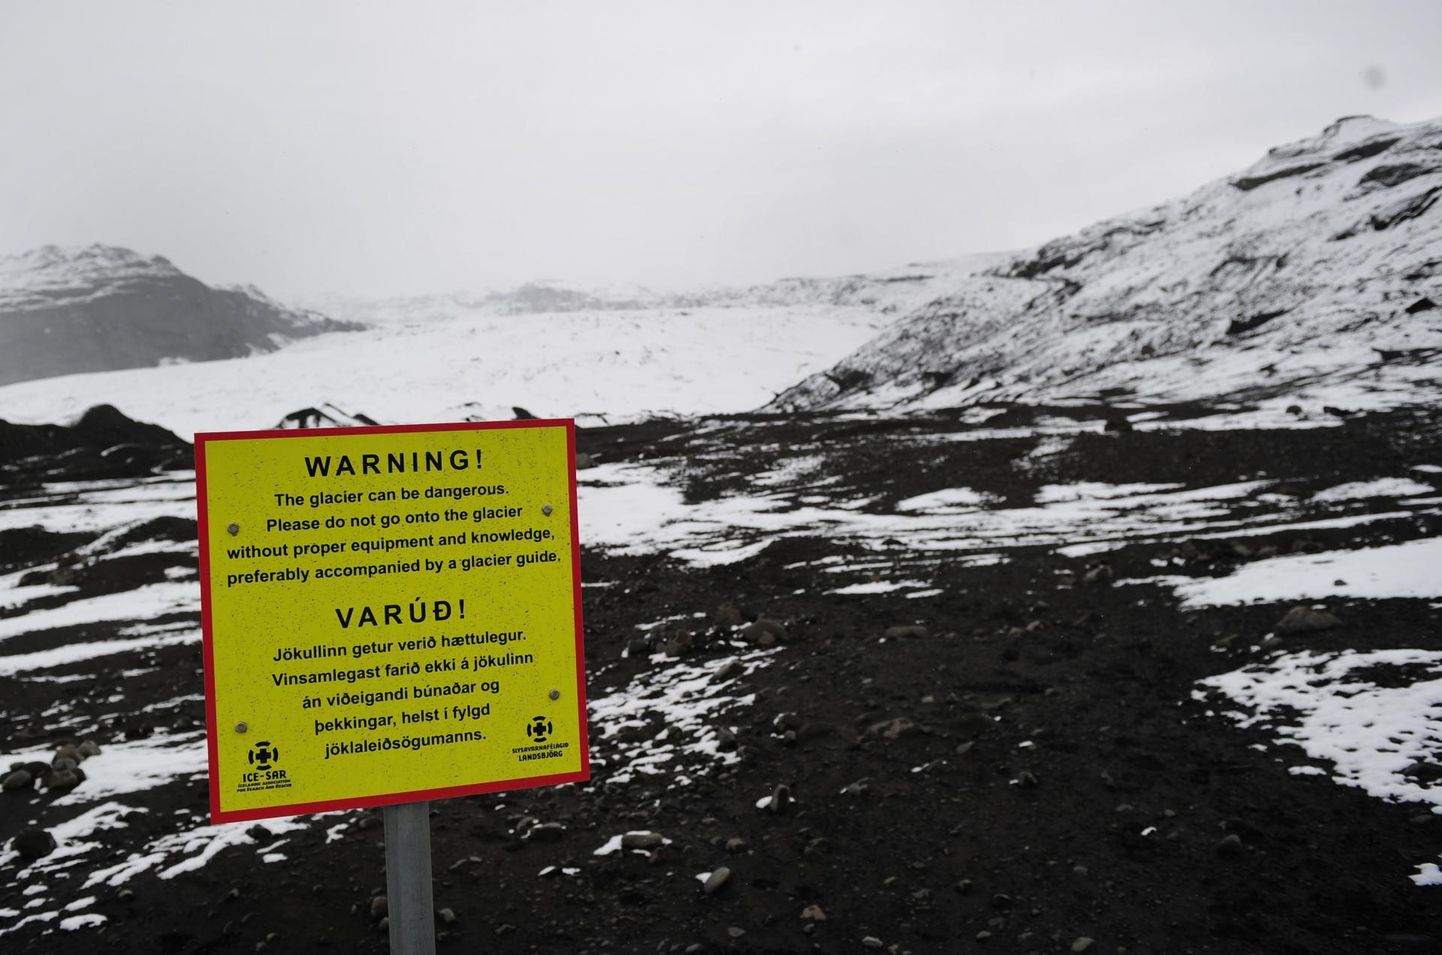 Lõuna-Islandil asuv Katla vulkaan on 2010. aasta aprillis ootamatult purskama hakanud Eyjafjallajökullist kümmekond korda võimsam, sestap ka mitmekeelne hoiatus.